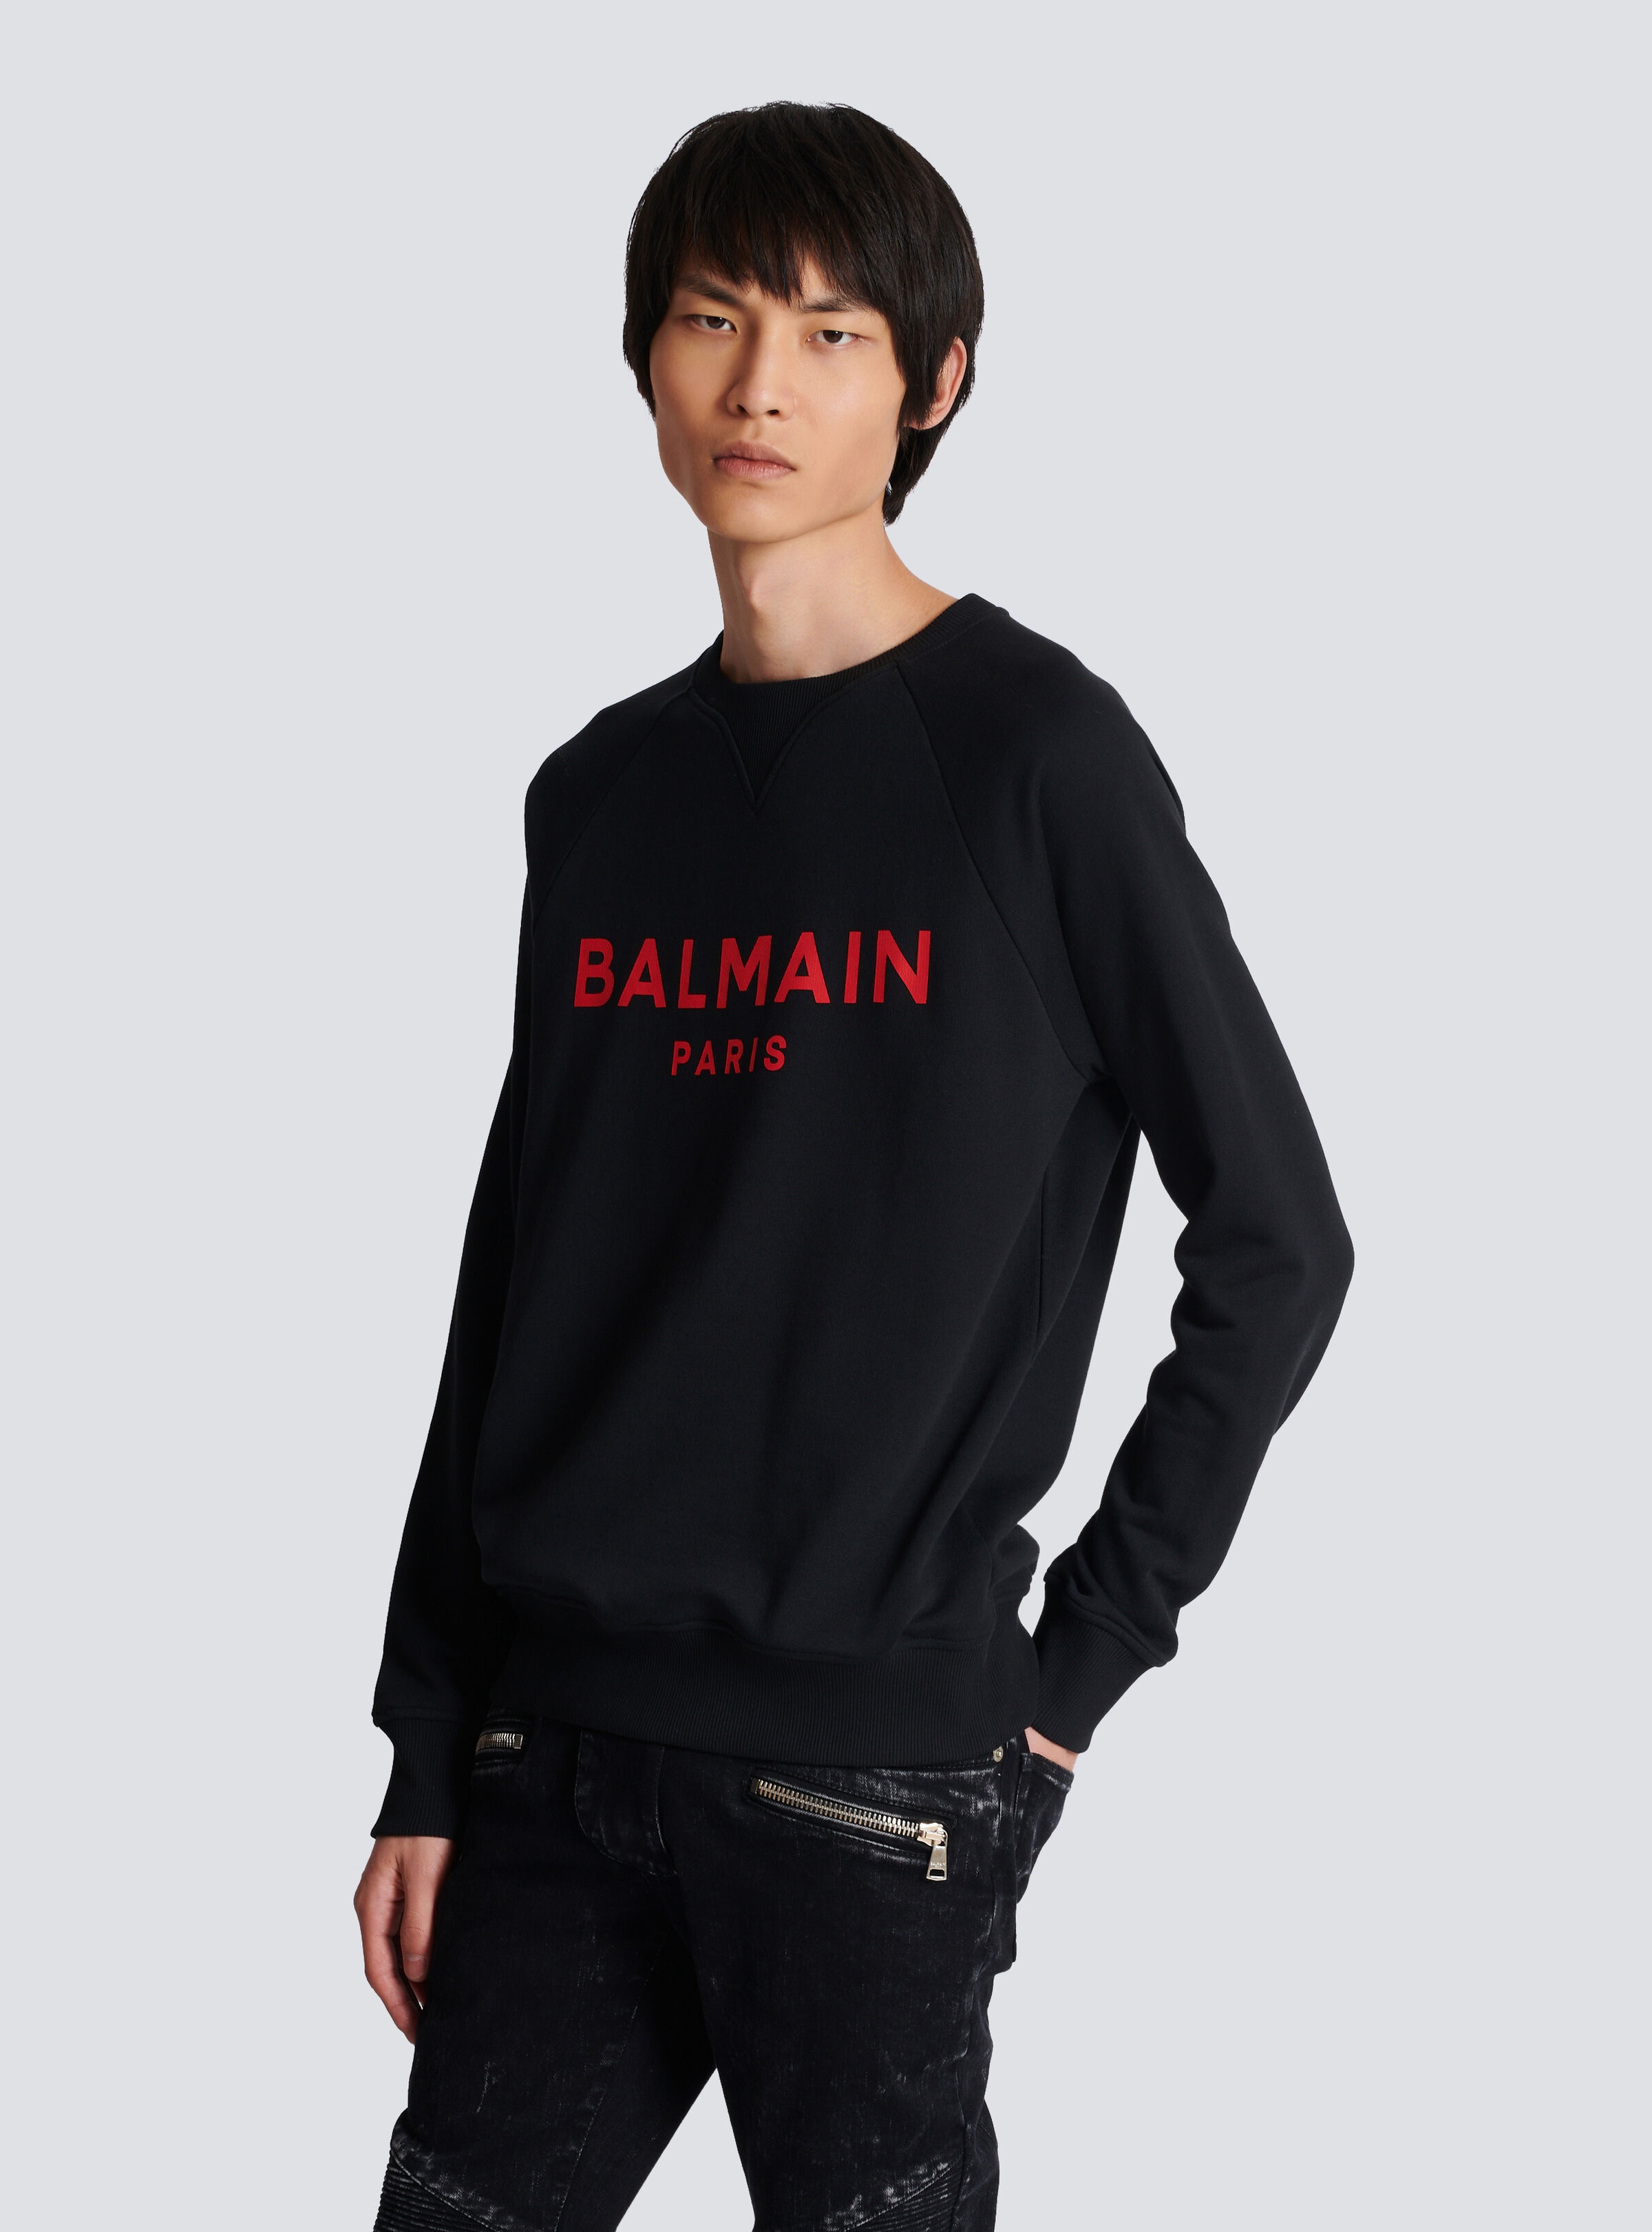 Balmain Paris printed sweatshirt - 6